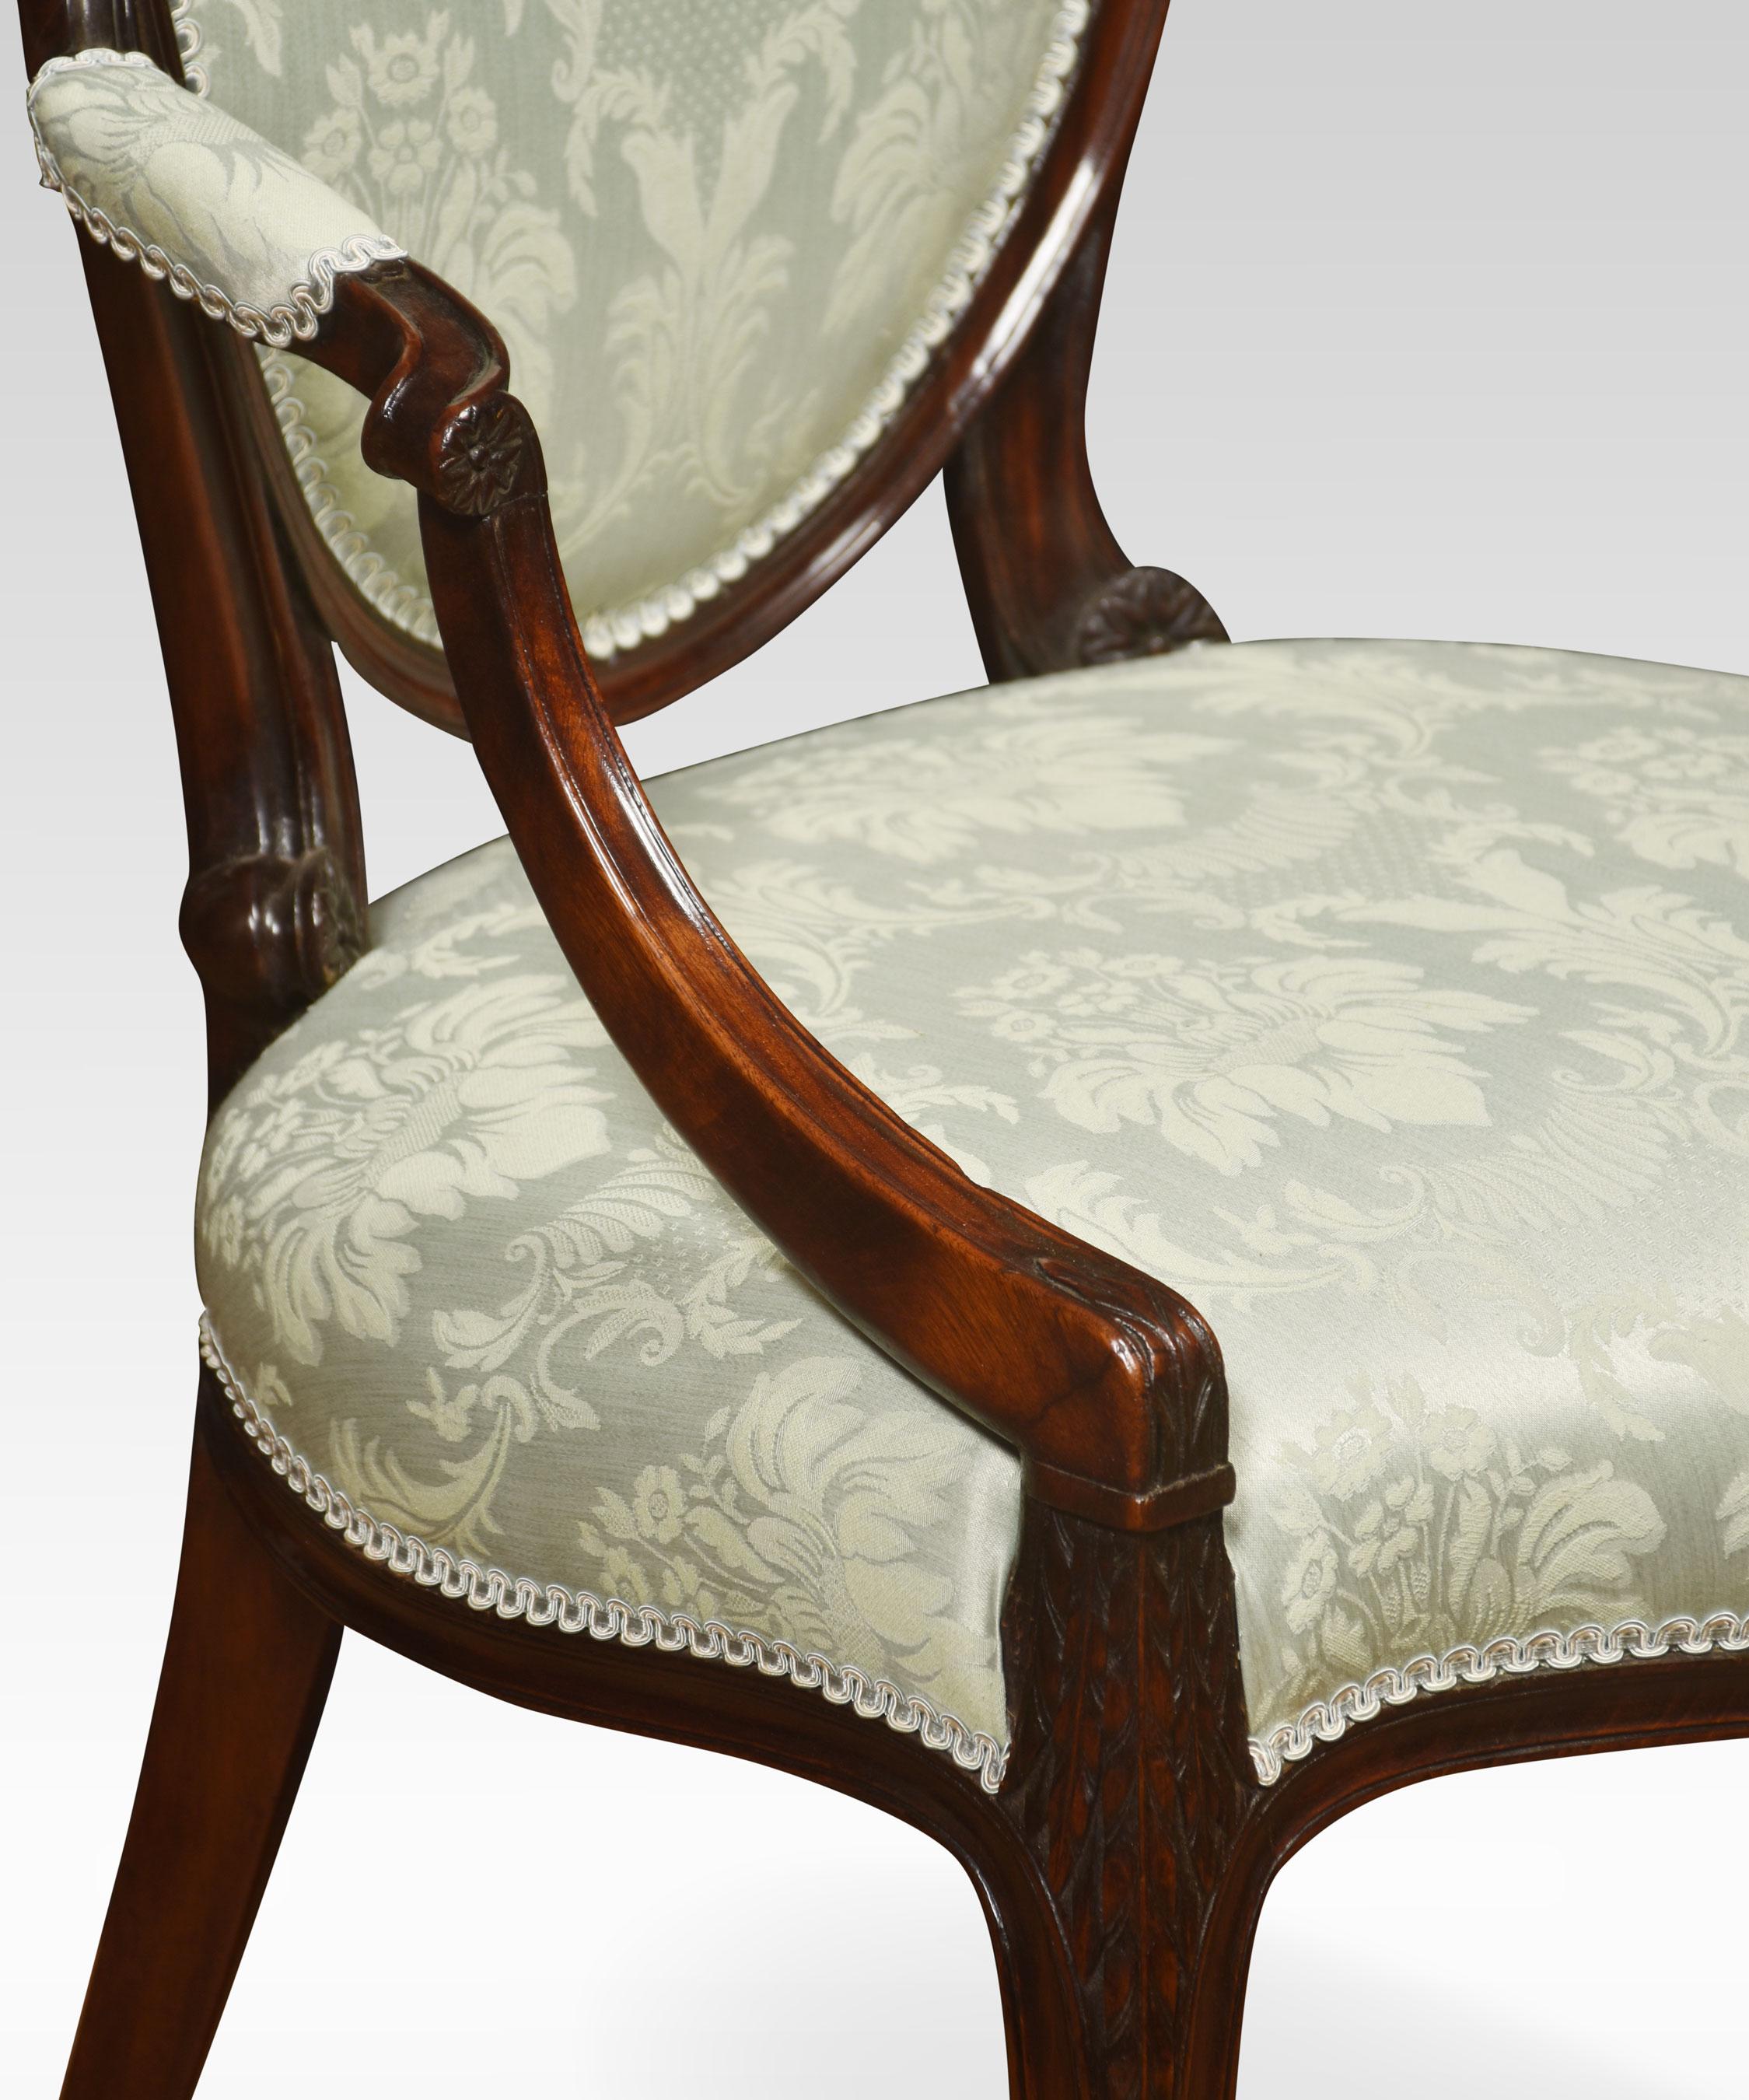 Zwei Mahagoni-Sessel im Hepplewhite-Stil mit ovalen Rückenlehnen und nach außen gebogenen Armlehnen, die mit grünem Damast gepolstert sind und auf schlanken Kabriolettstützen ruhen.
Abmessungen
Höhe 40 Zoll Höhe zum Sitz 18,5 Zoll
Breite 24